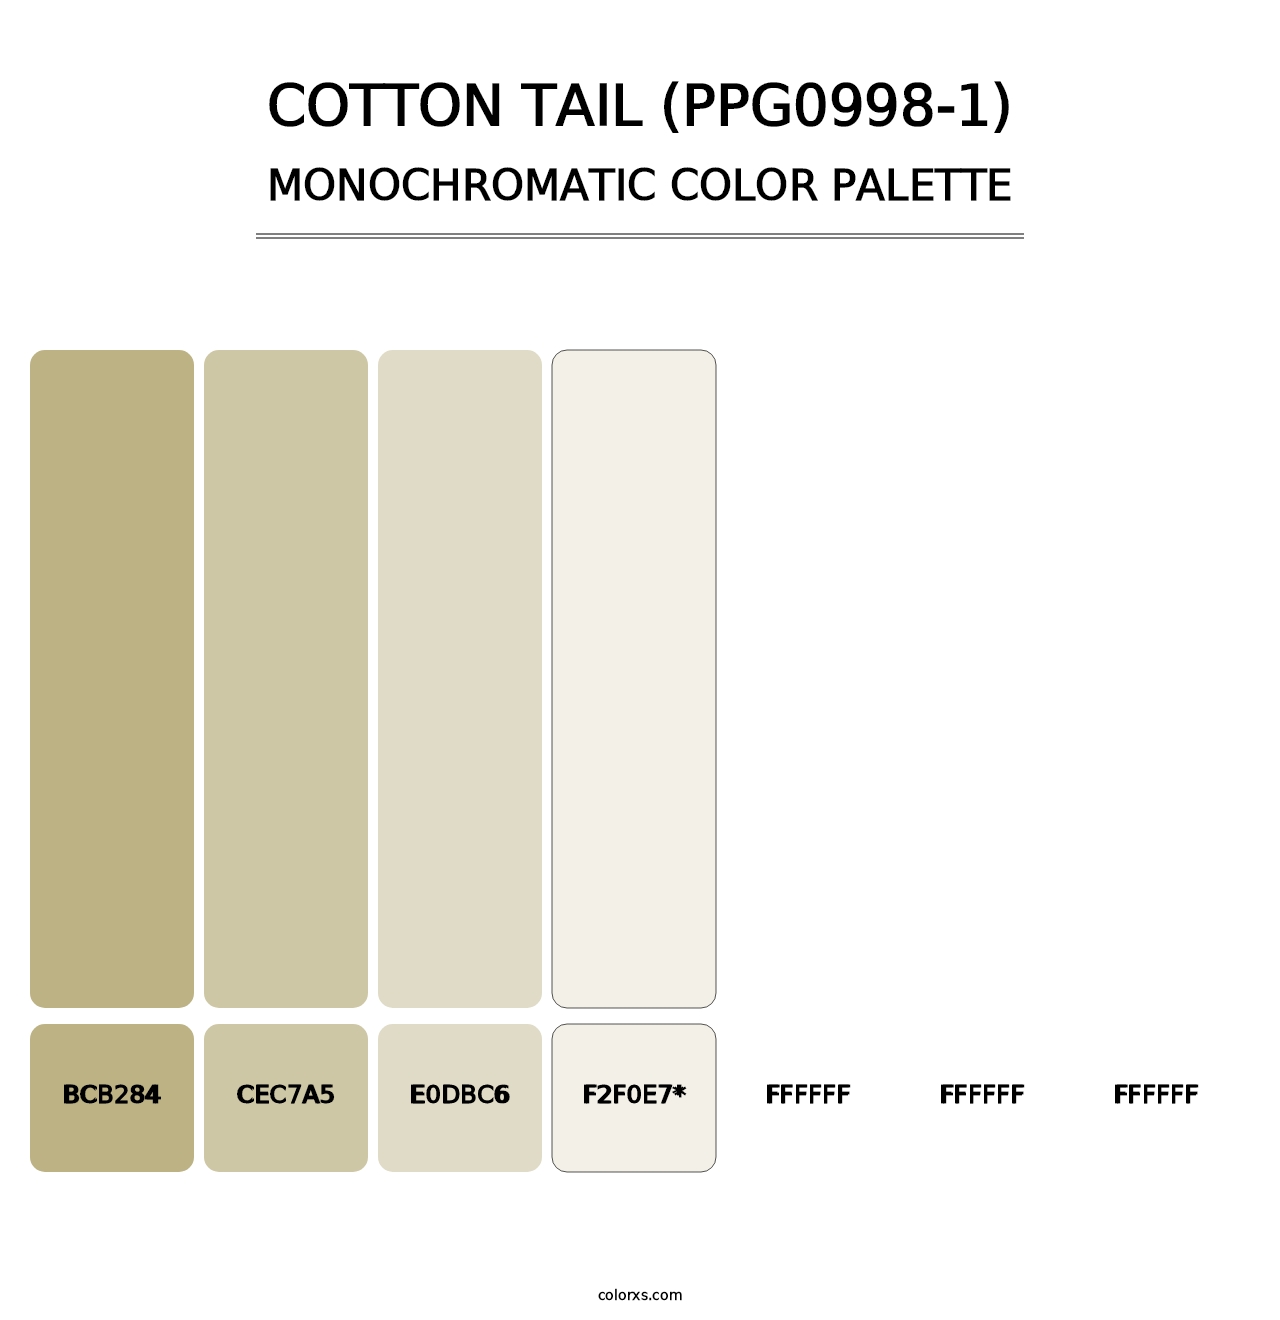 Cotton Tail (PPG0998-1) - Monochromatic Color Palette